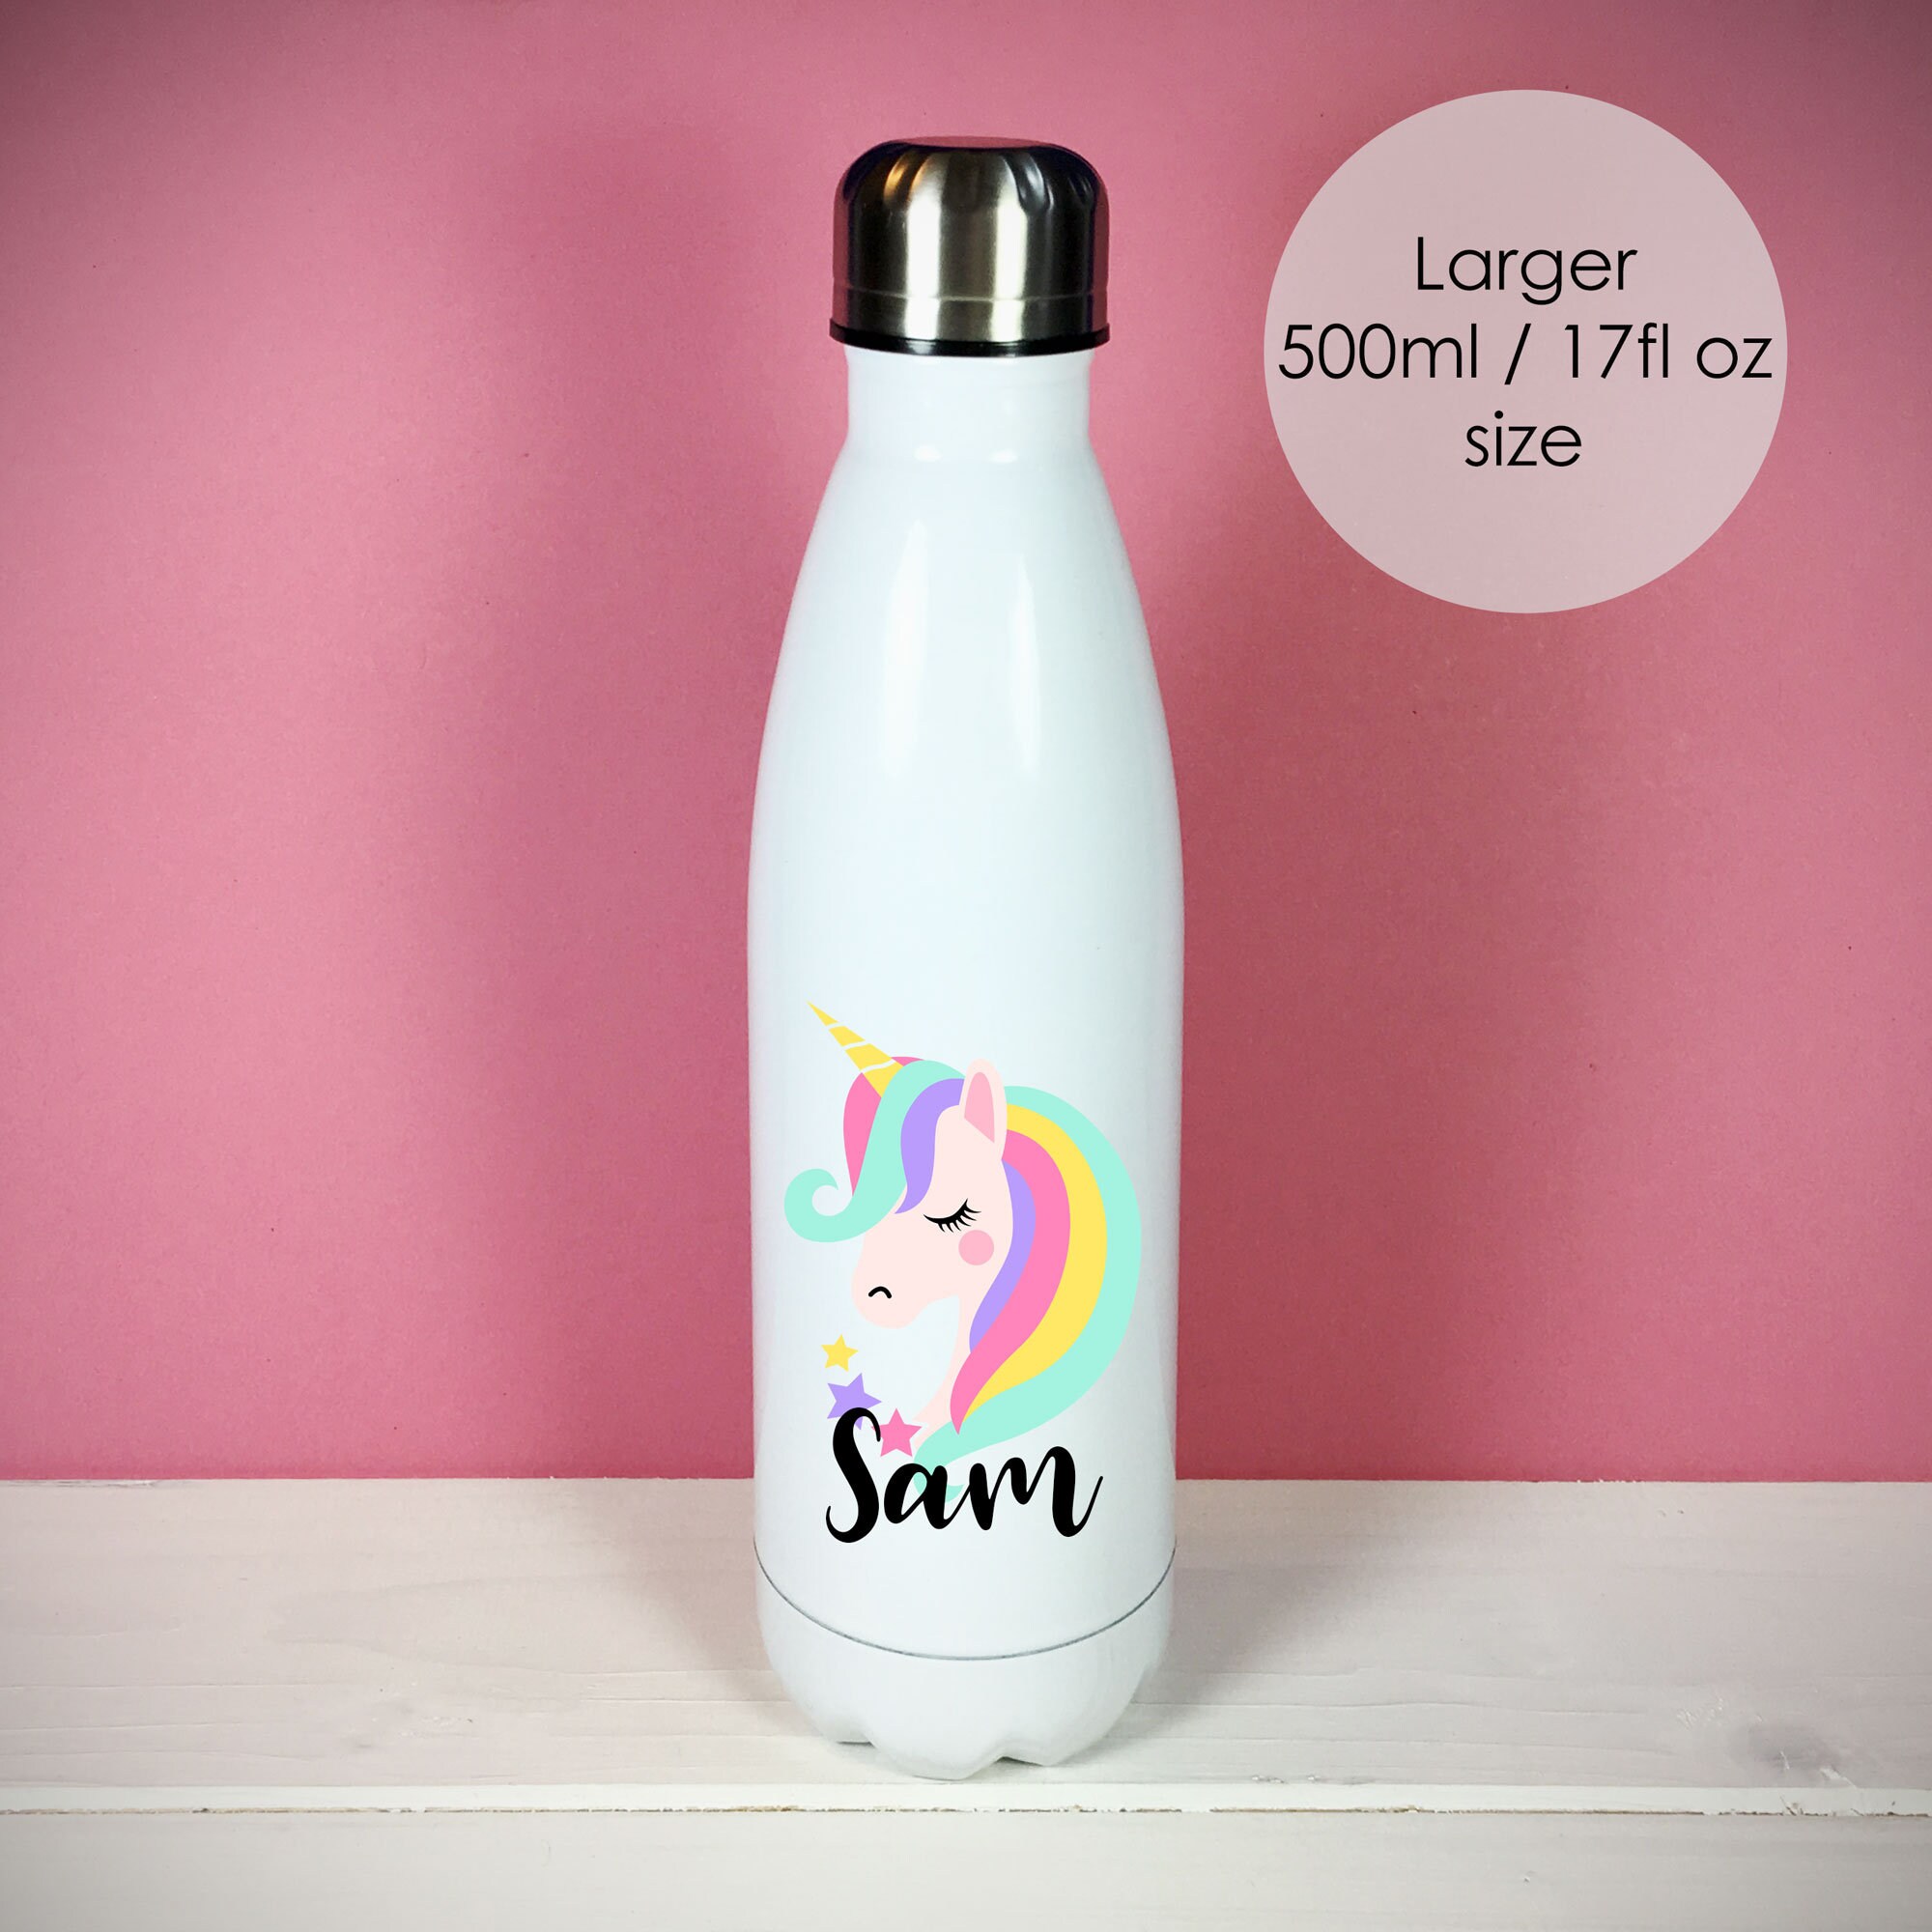 Ion8 - Pod Leak Proof Bpa Free Kids Water Bottle 350Ml - Unicorn